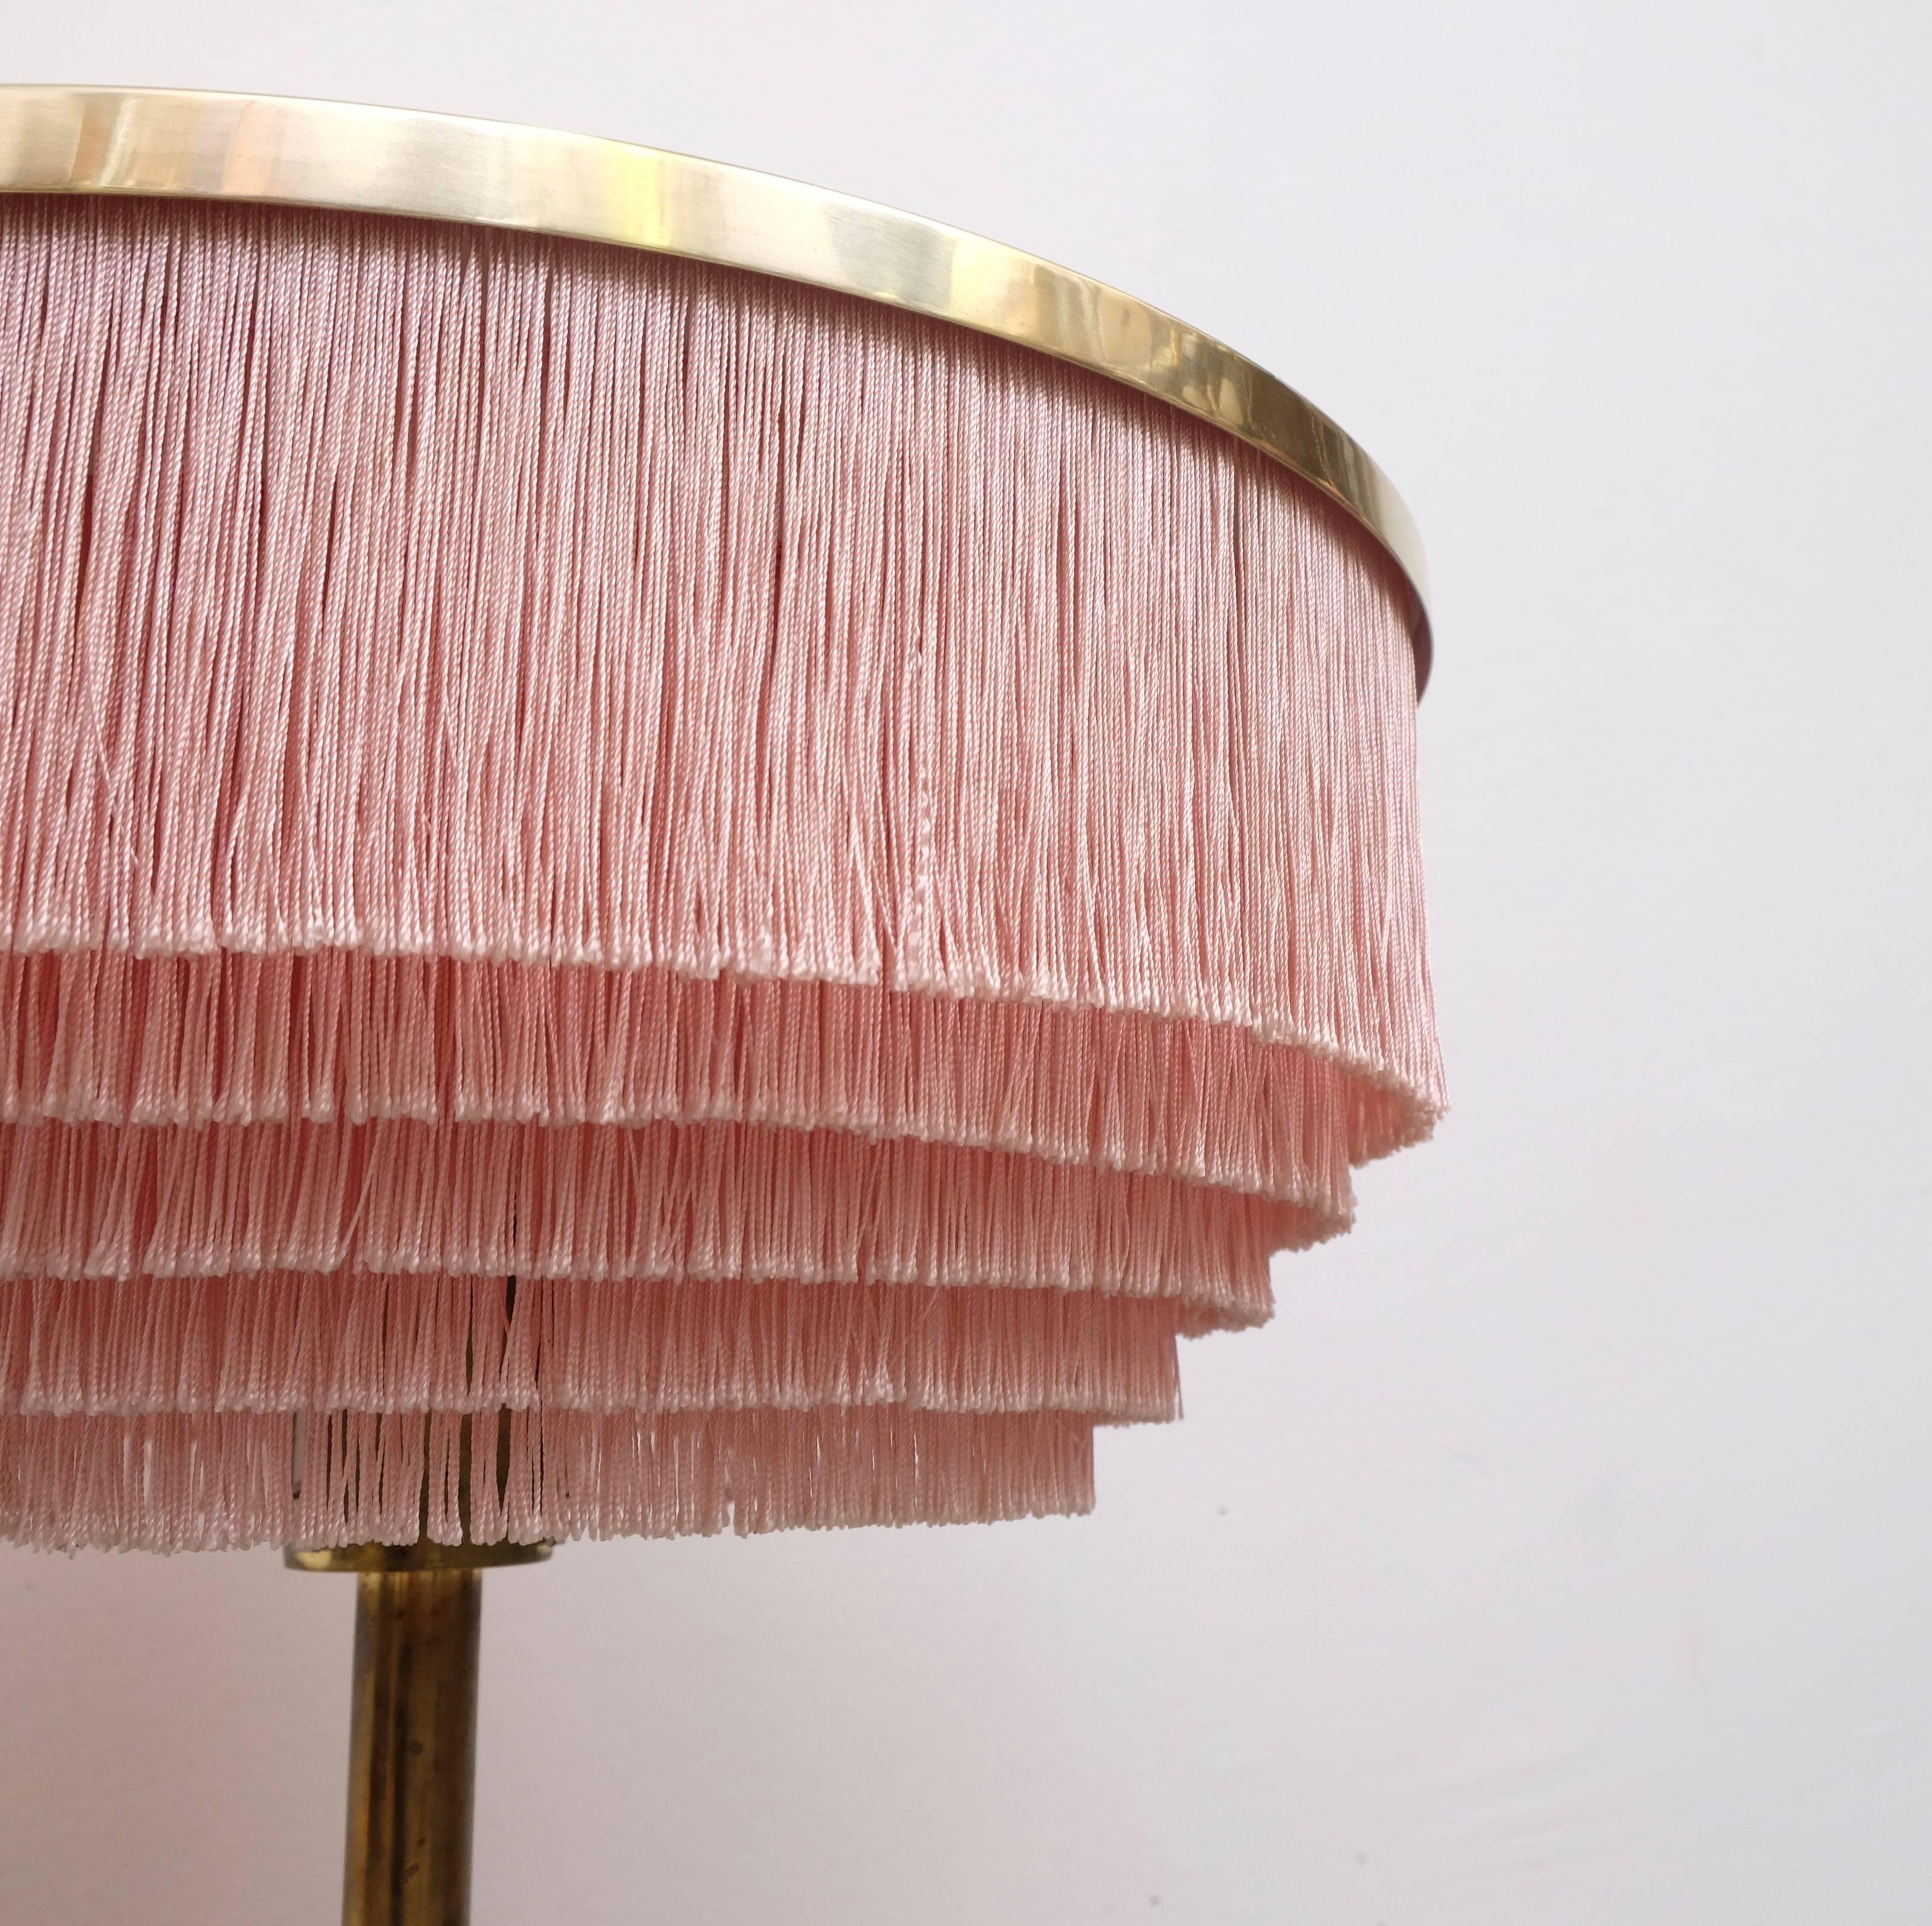 Lampe de table rose produite par Hans-Agne Jakobsson à Markaryd, Suède.
Nouveau câblage. Excellent état.